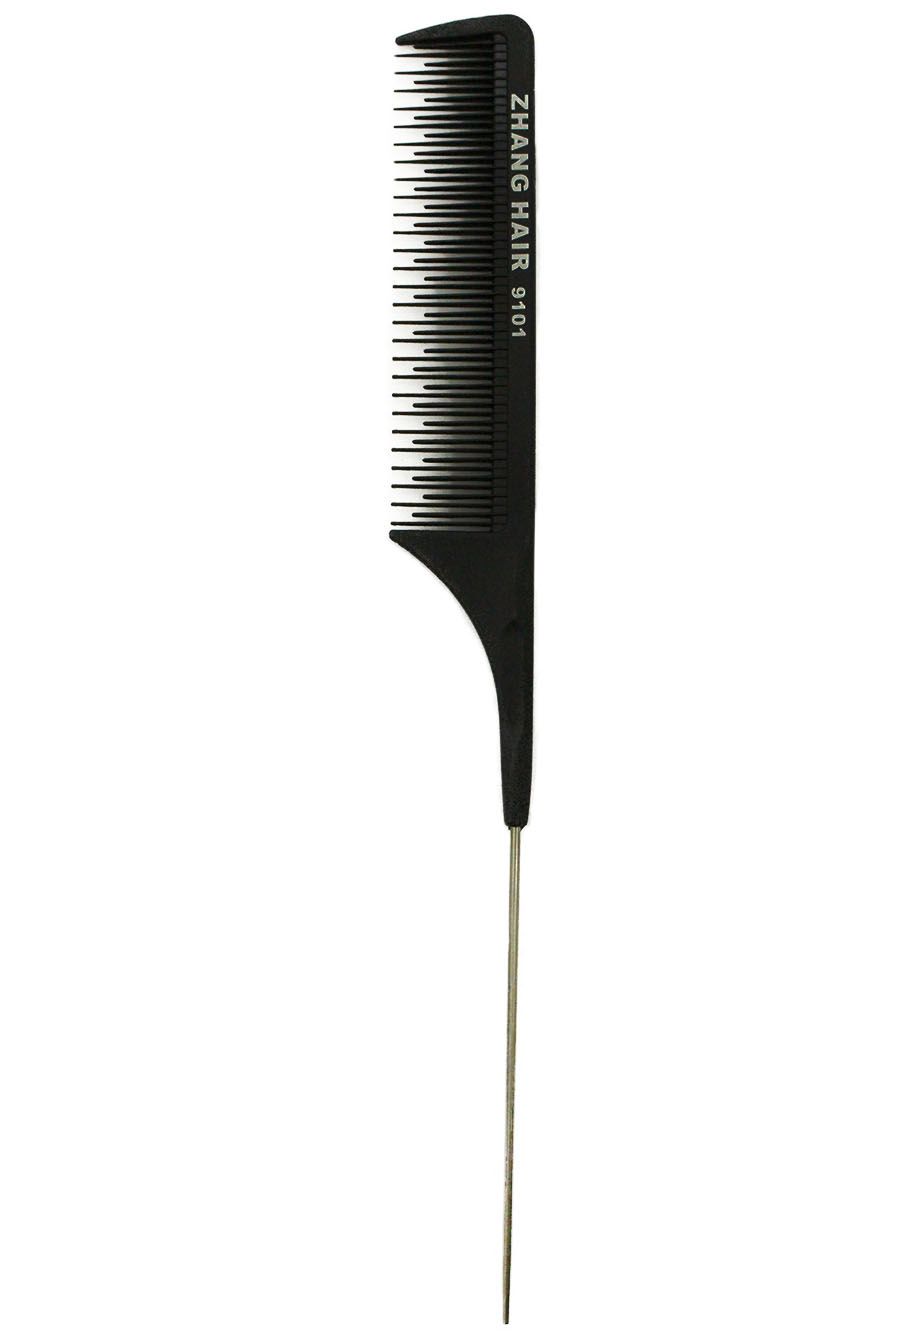 Pente de Carbono - Zhang Hair 9101 -  Cerdas Variadas com Ponta Metalizada